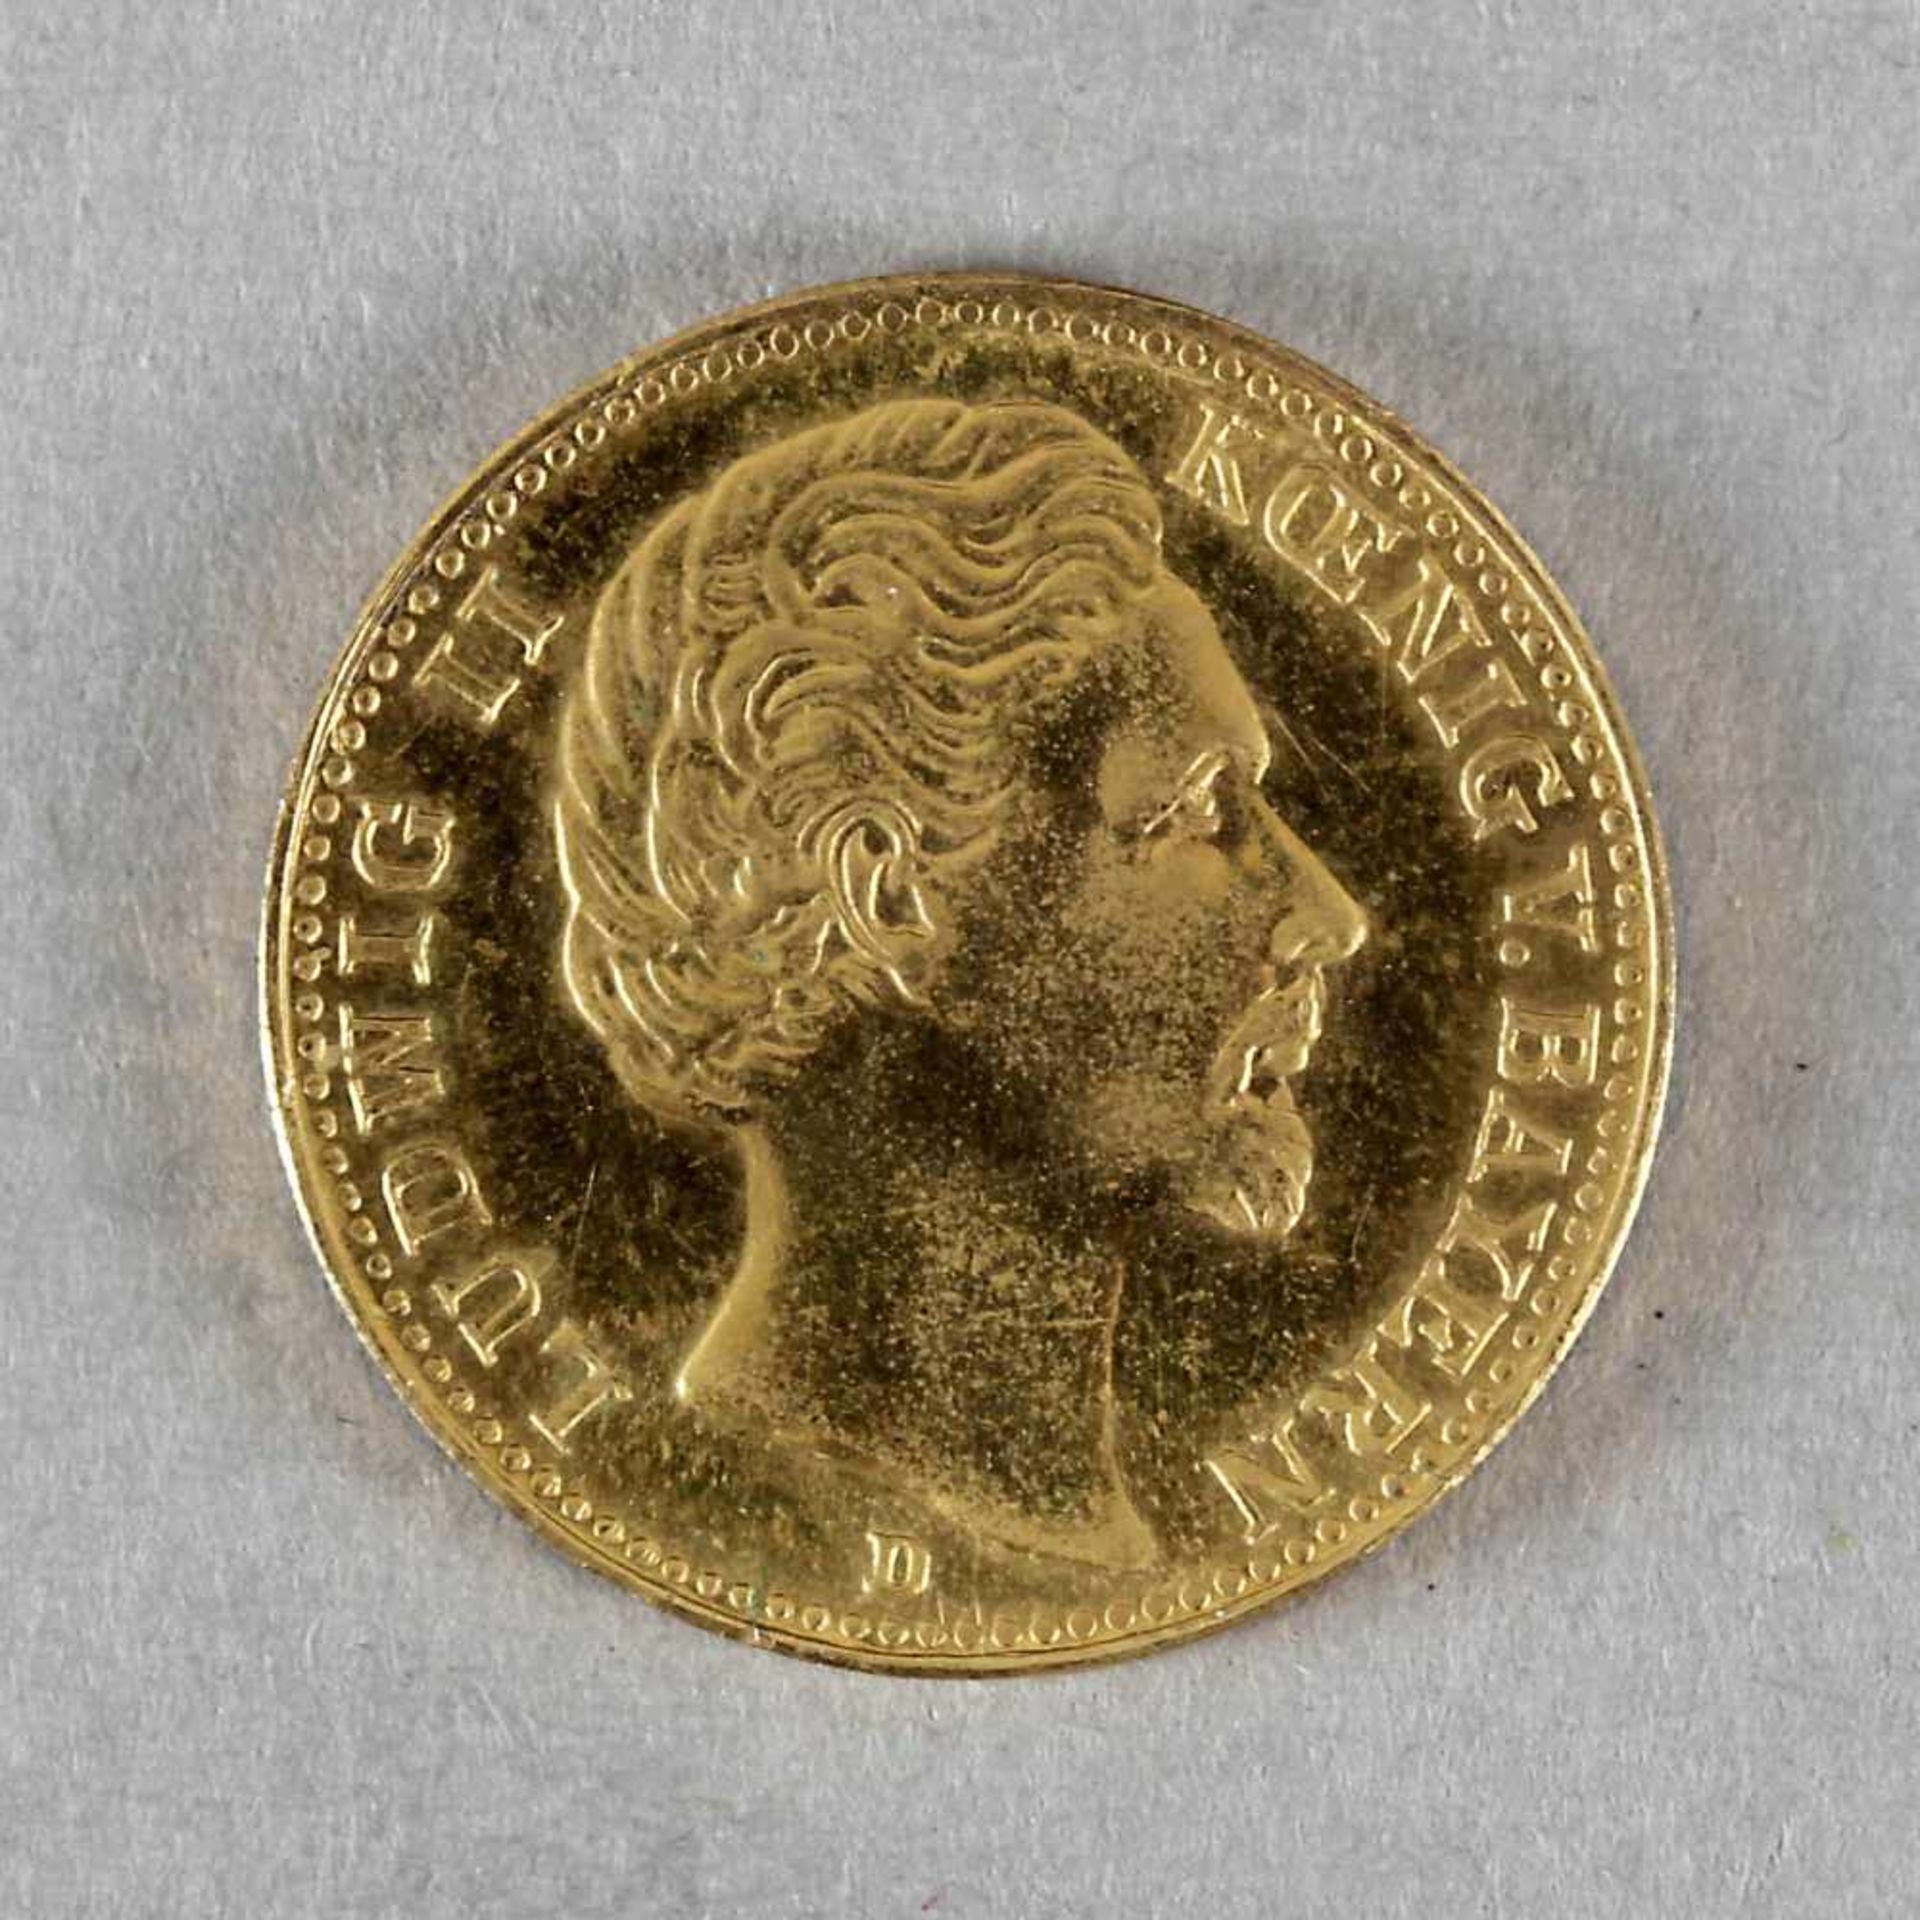 Fälschung/Nachprägung einer 20 Mark Goldmünze